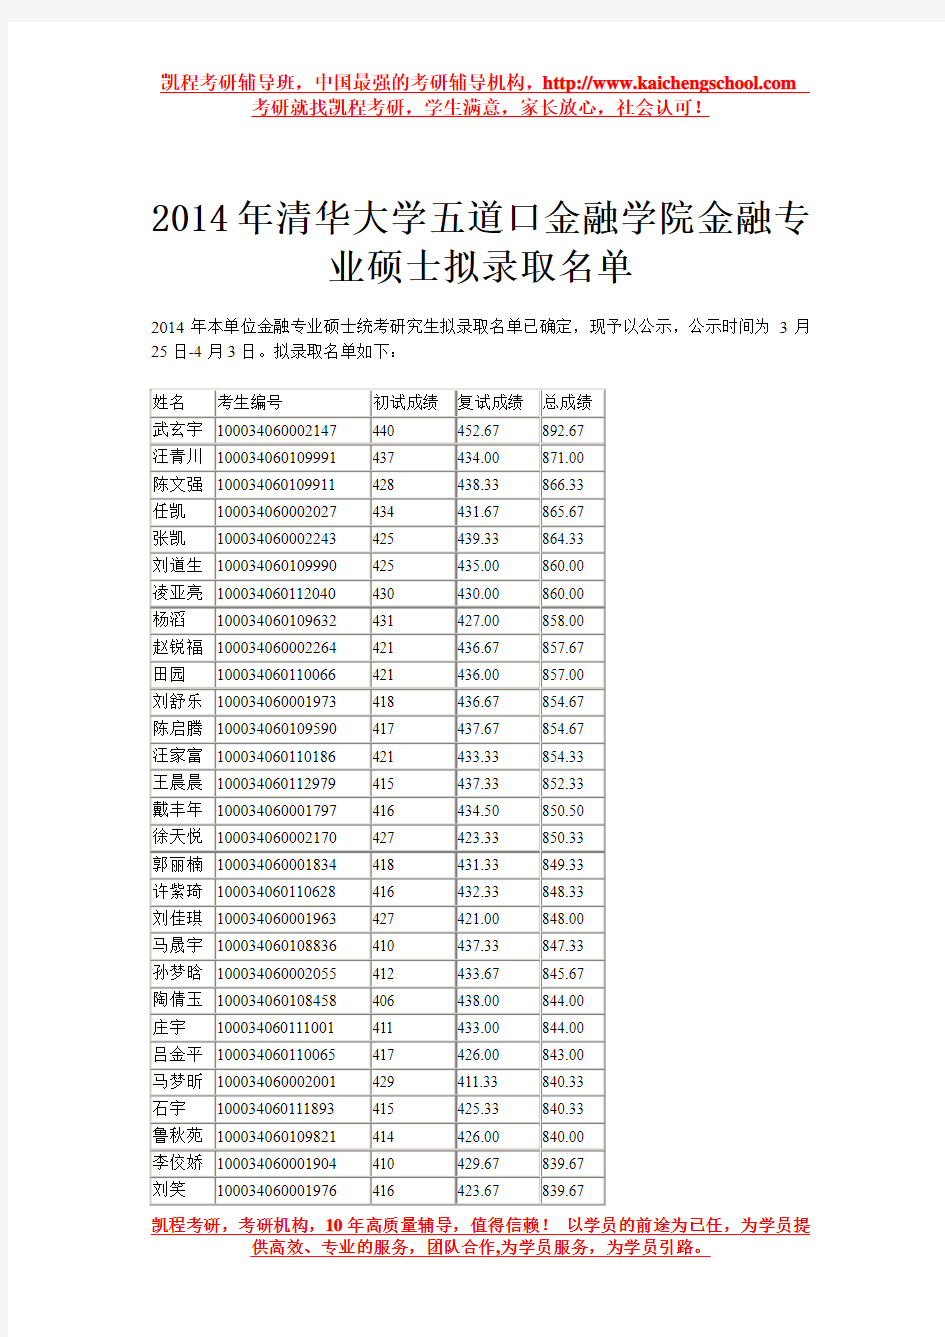 2014年清华大学五道口考研拟录取名单